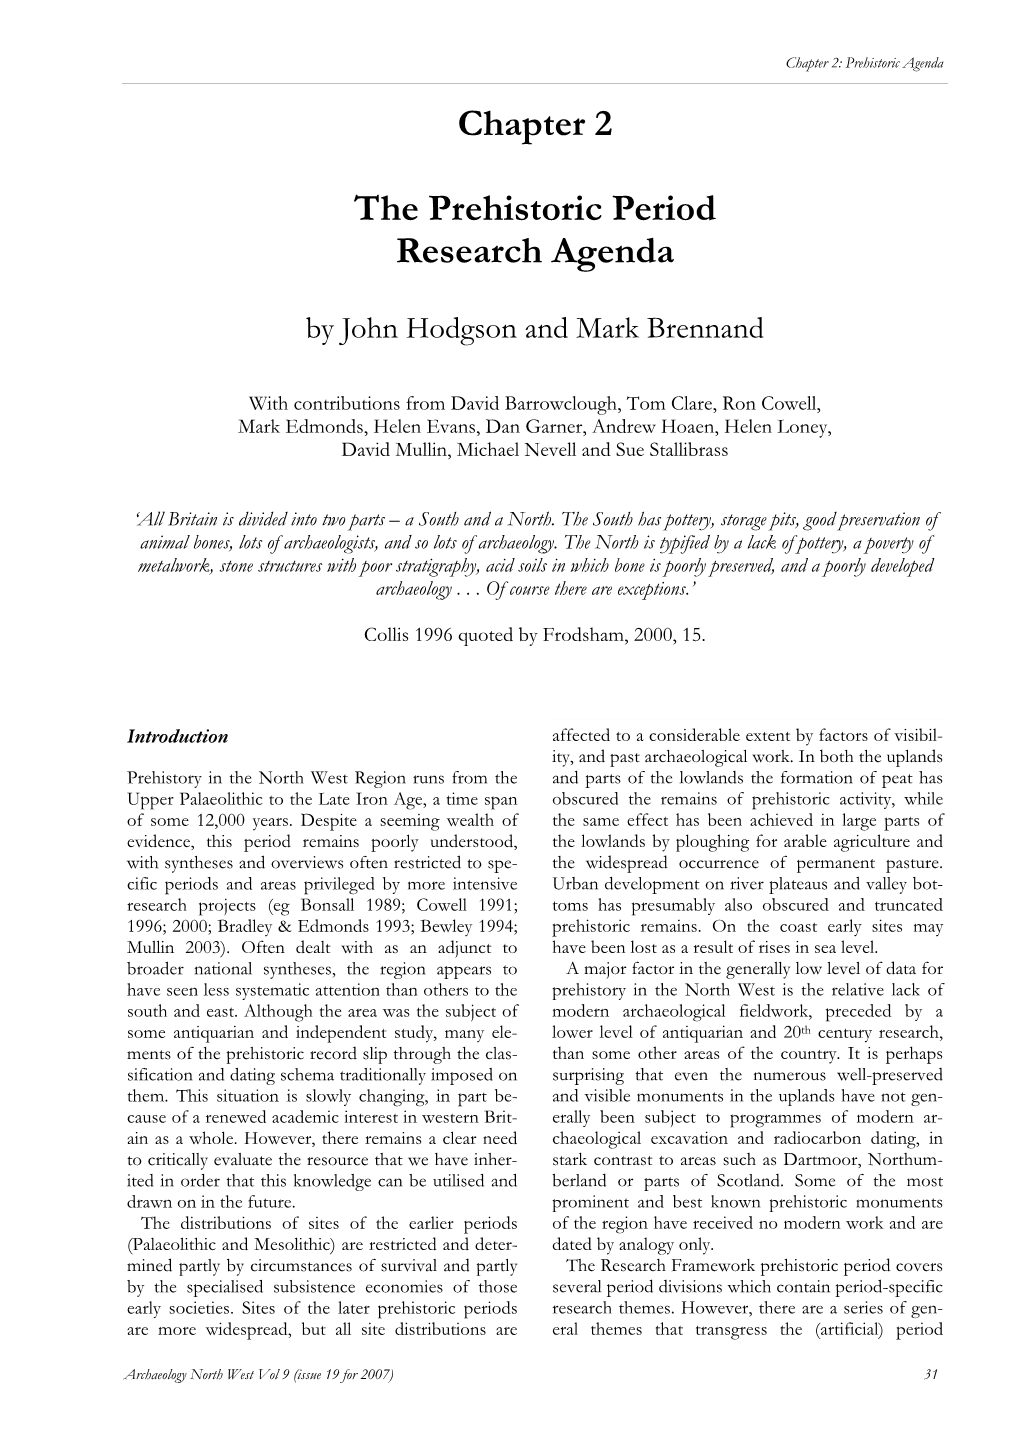 2. the Prehistoric Period Research Agenda